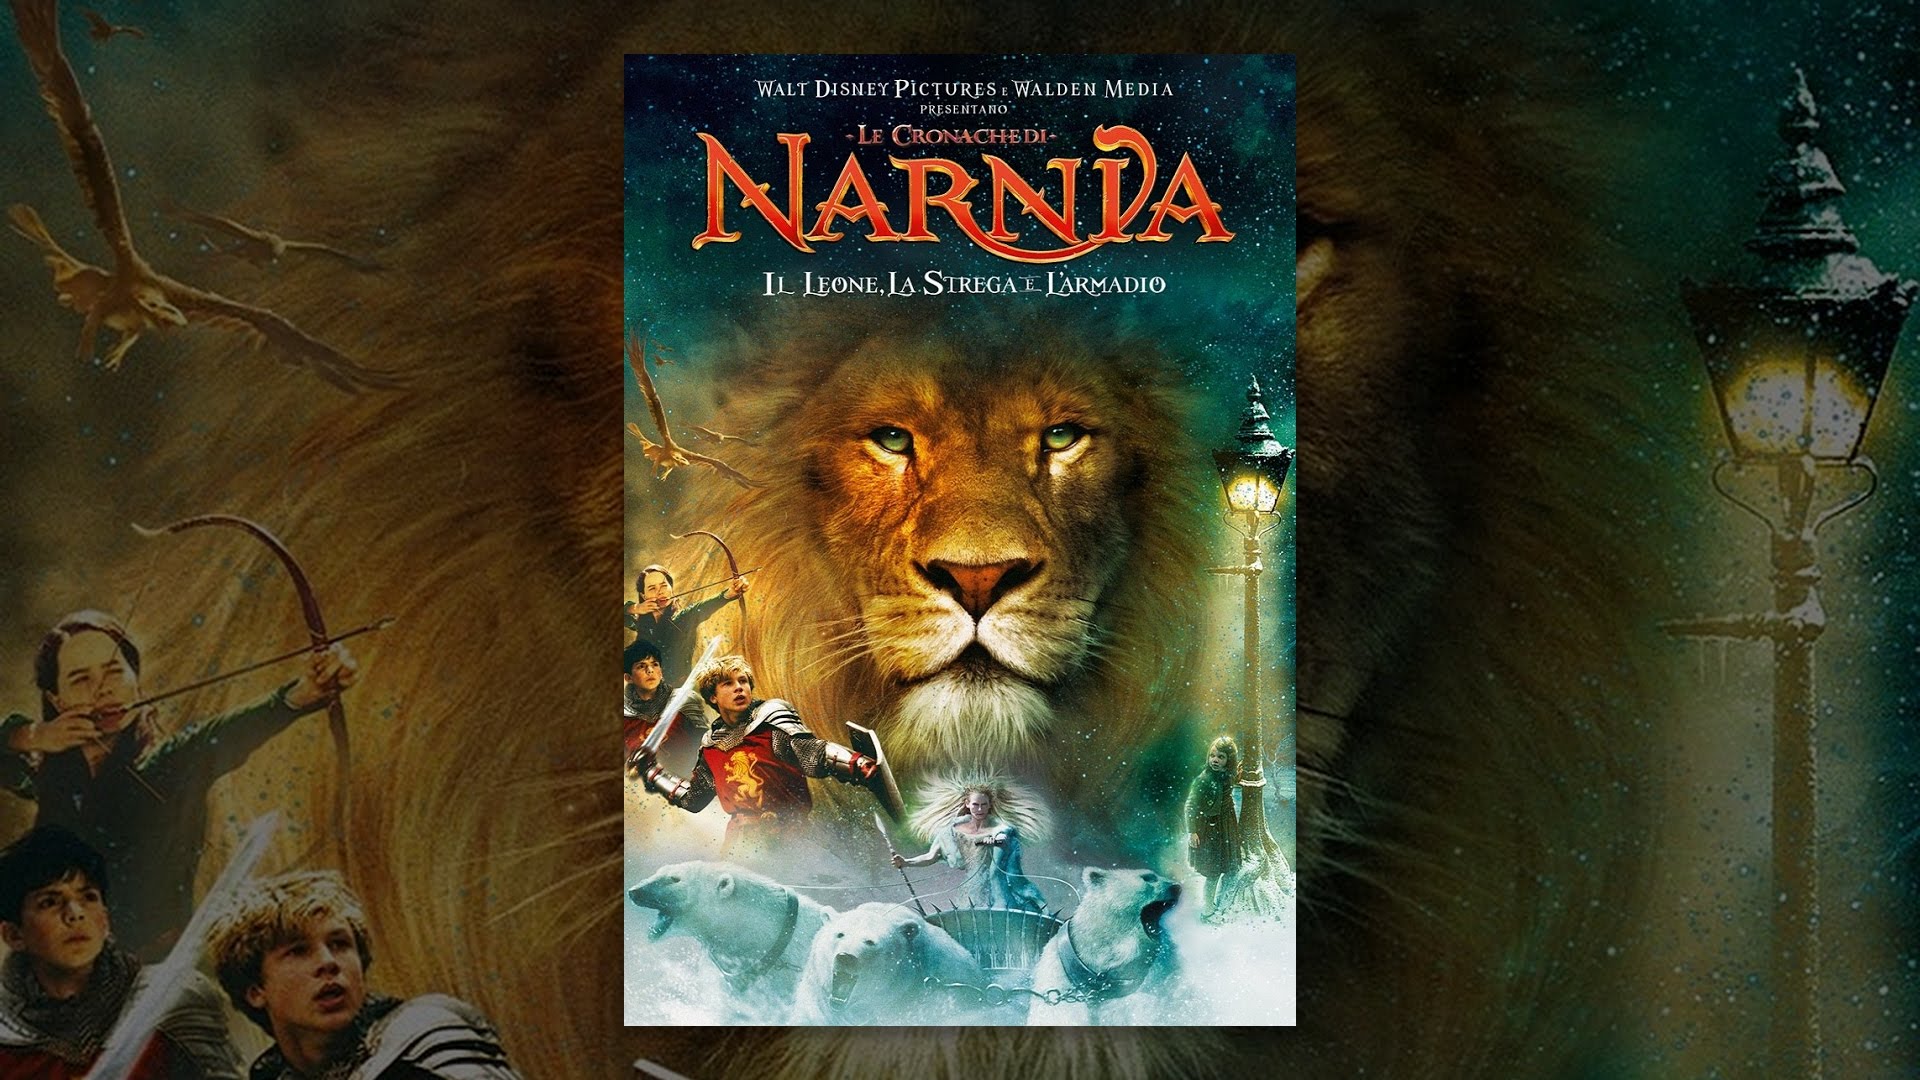 Le cronache di Narnia: il leone, la strega e l’armadio